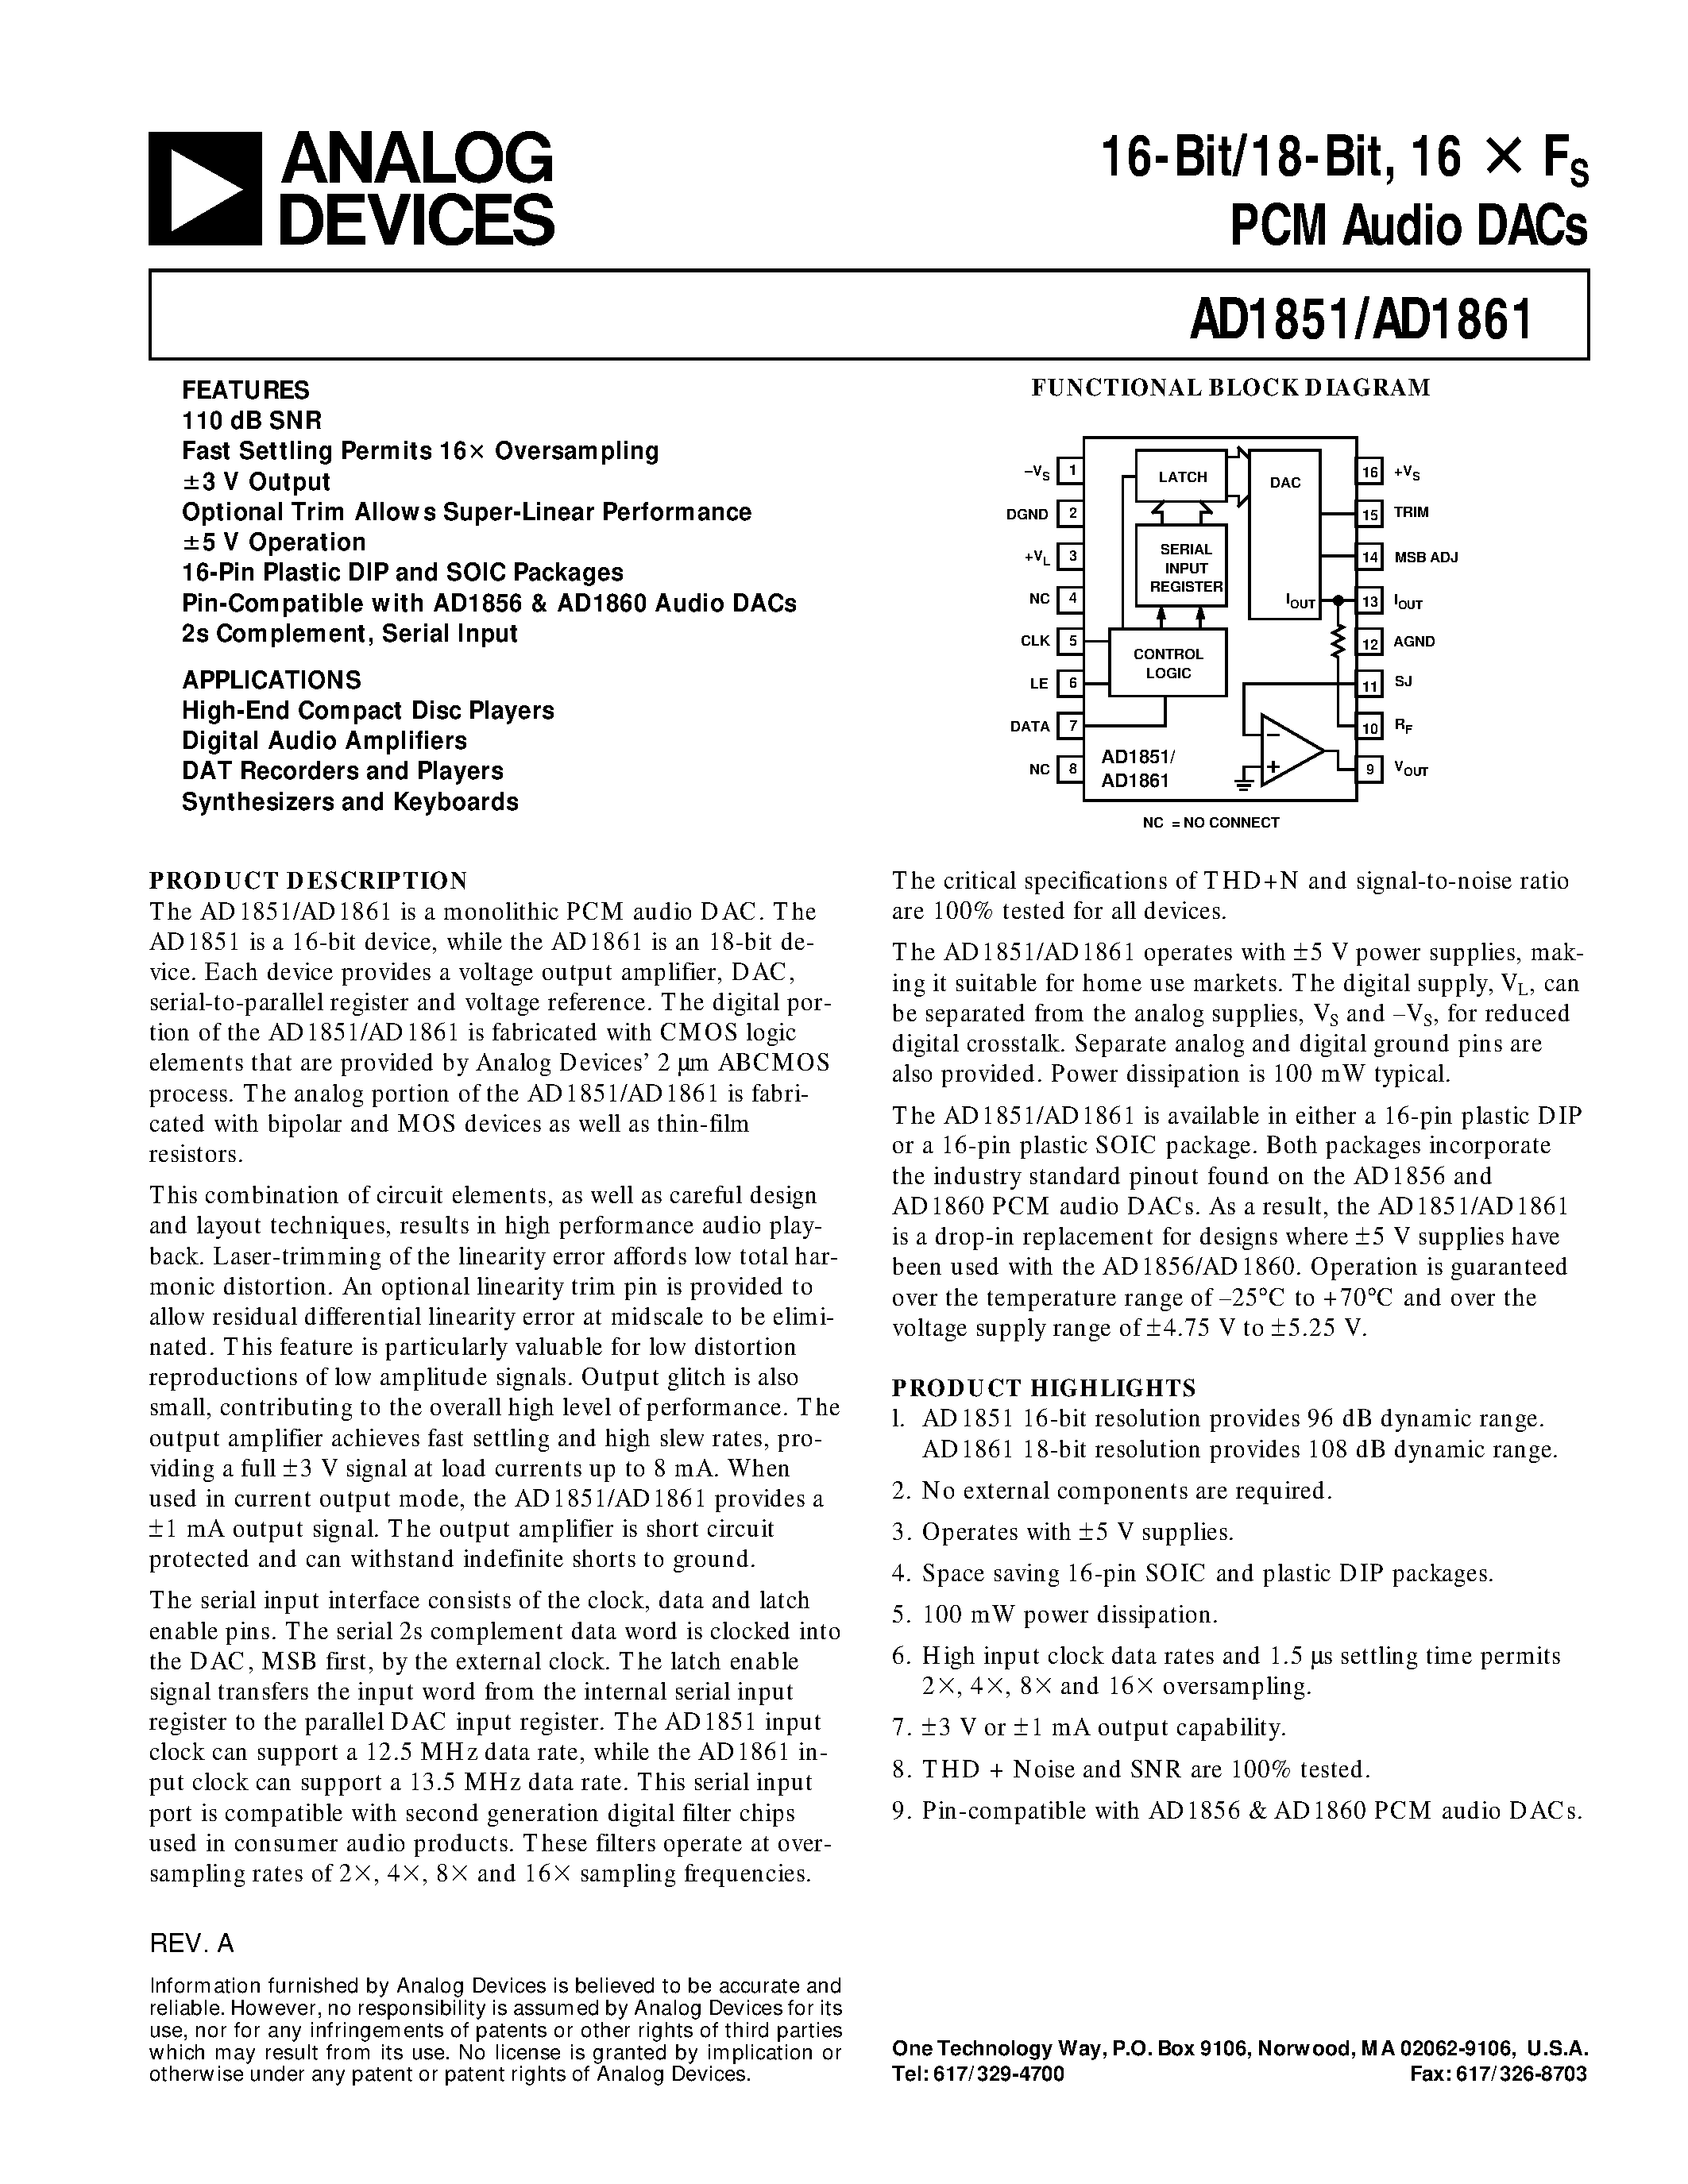 Даташит AD1861N-J - 16-Bit/18-Bit/ 16 X Fs PCM Audio DACs страница 1